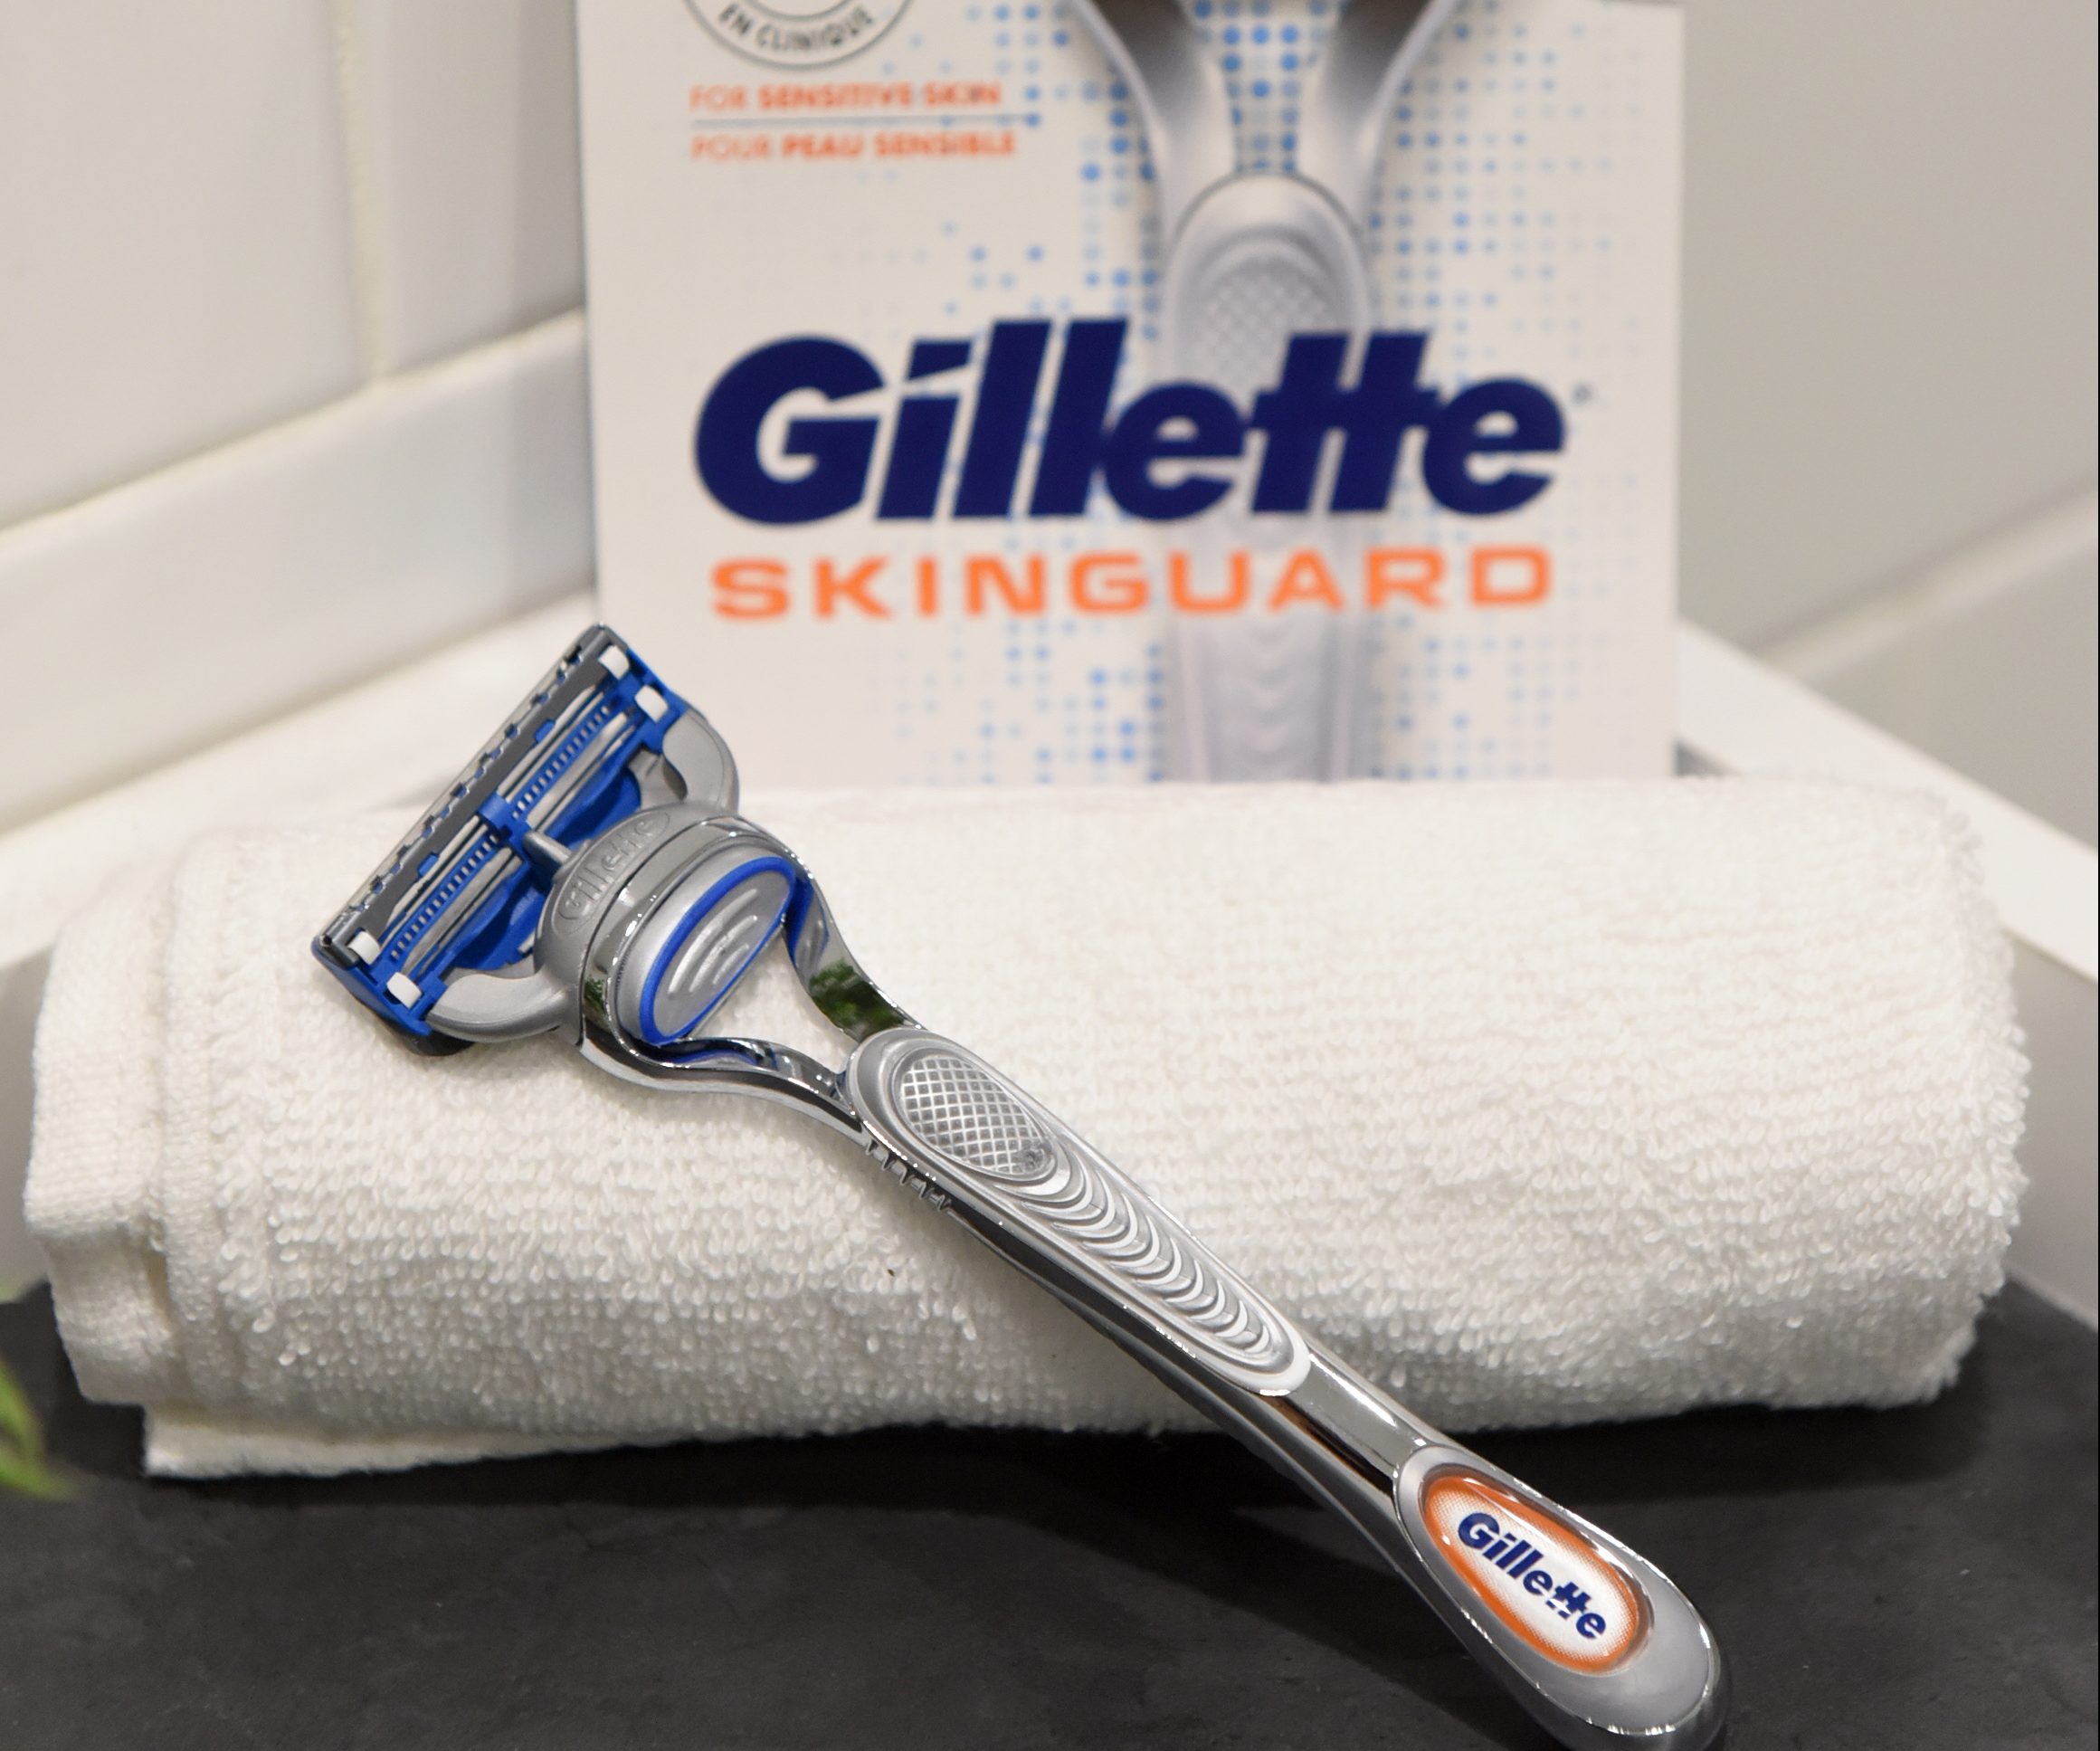 Het nieuwe scheermes van Gillette: de Gillette SkinGuard. Bedoeld voor mannen met een gevoellige huid. Foto Diane Bondareff / Gillette